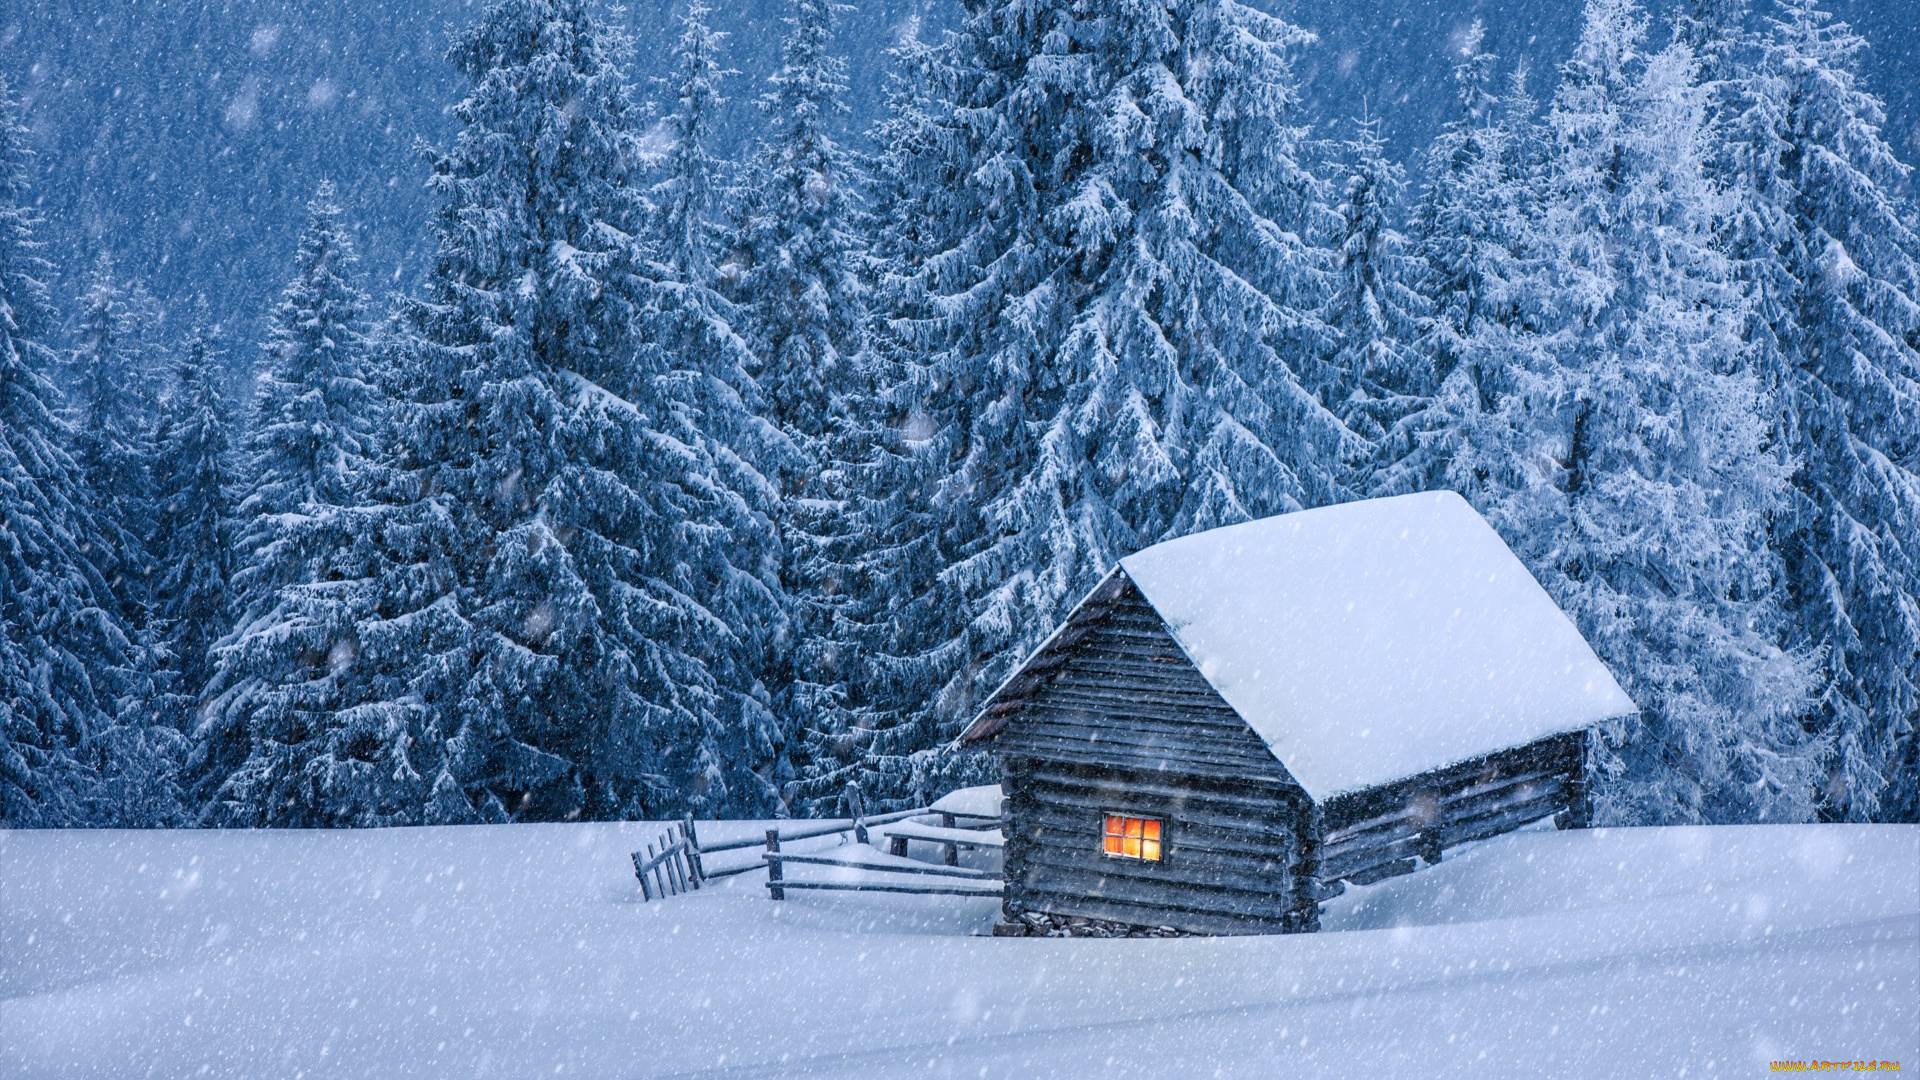 природа, зима, хижина, домик, елки, снег, landscape, snow, winter